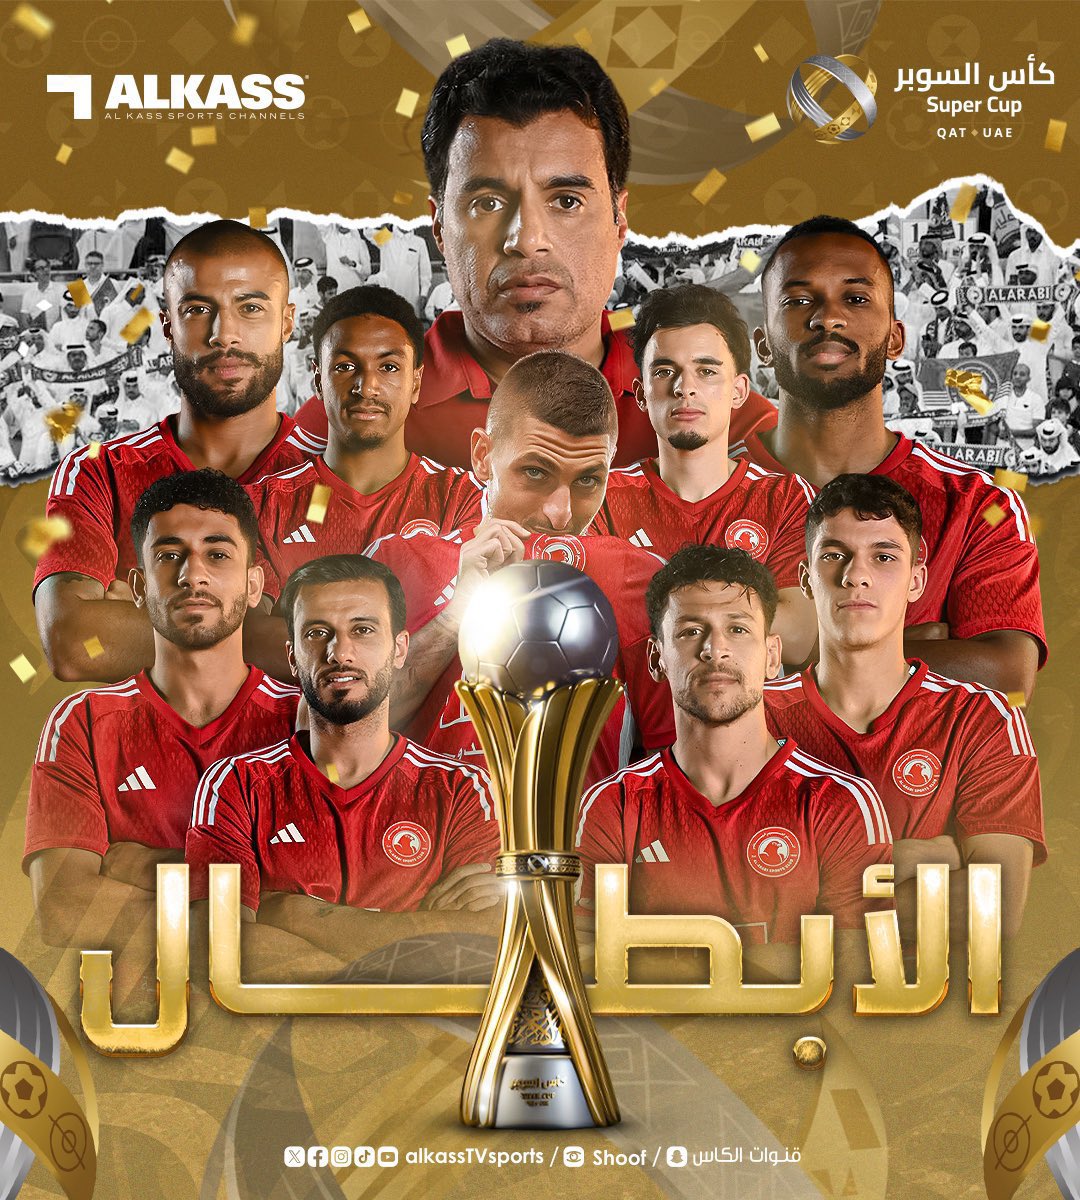 🚨🚨🚨🚨🚨🚨 عاجل — رسميًا:

نادي العربي القطري يحقق لقب كأس السوبر القطري الإماراتي بعد الفوز على الشارقة الإماراتي في أول نسخة من البطولة.

🔴⚪️🔴⚪️🔴⚪️🔴
🇶🇦🇶🇦🇶🇦🇶🇦🇶🇦🇶🇦🇶🇦
🏆🏆🏆🏆🏆🏆🏆